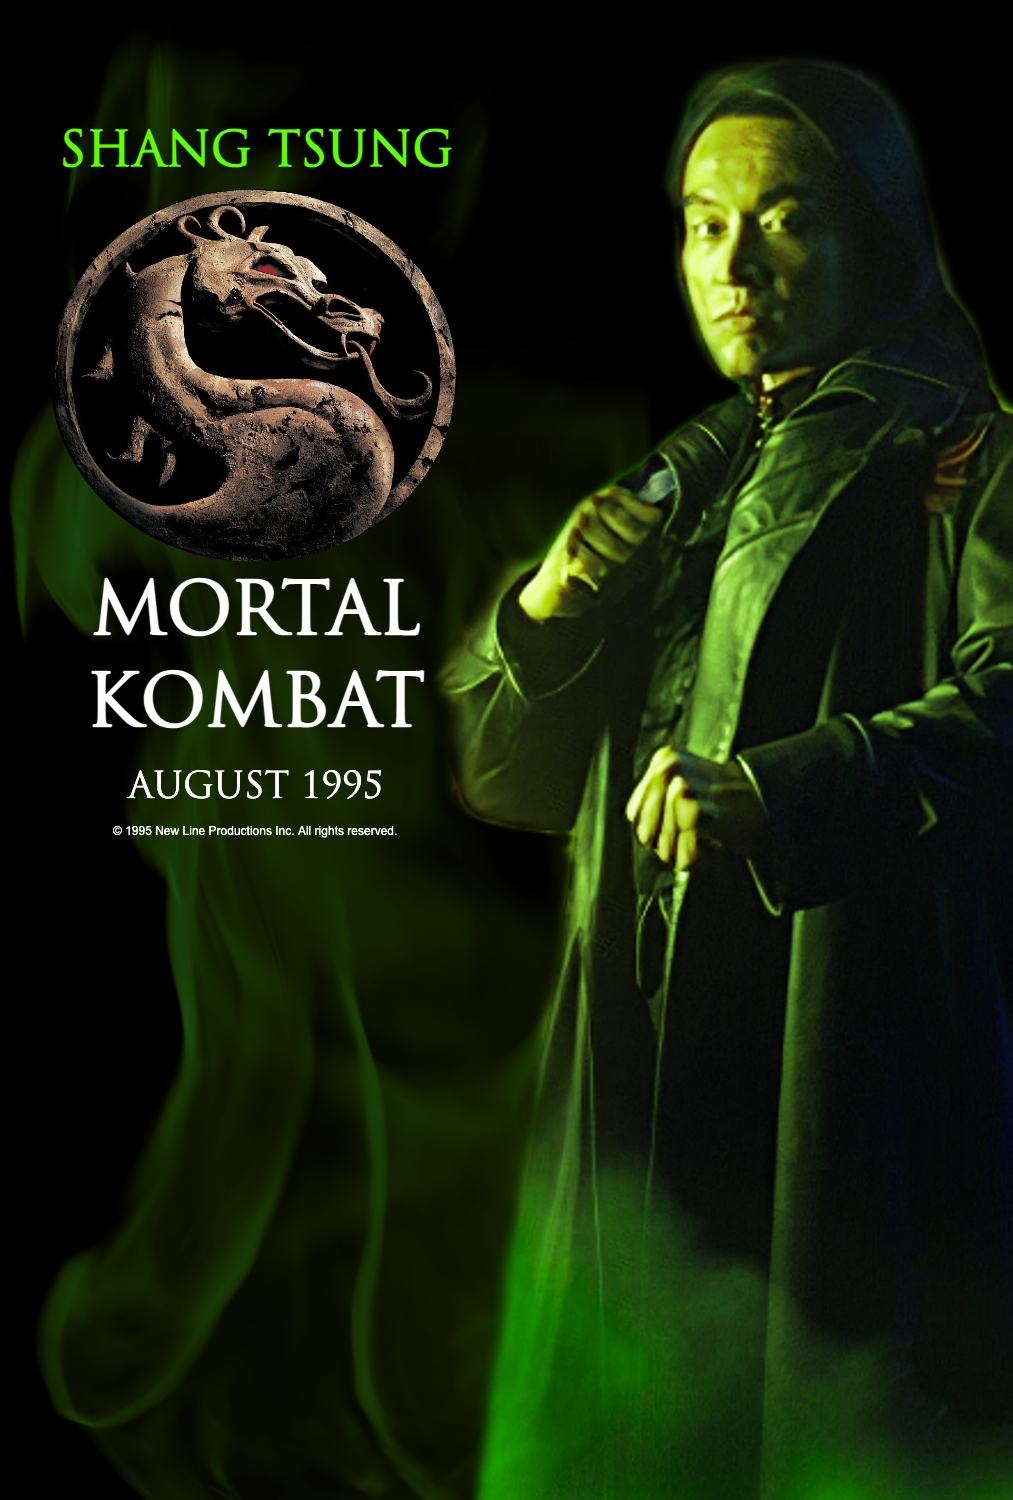 Mortal kombat 1 SHANG TSUNG by ozyajami on DeviantArt